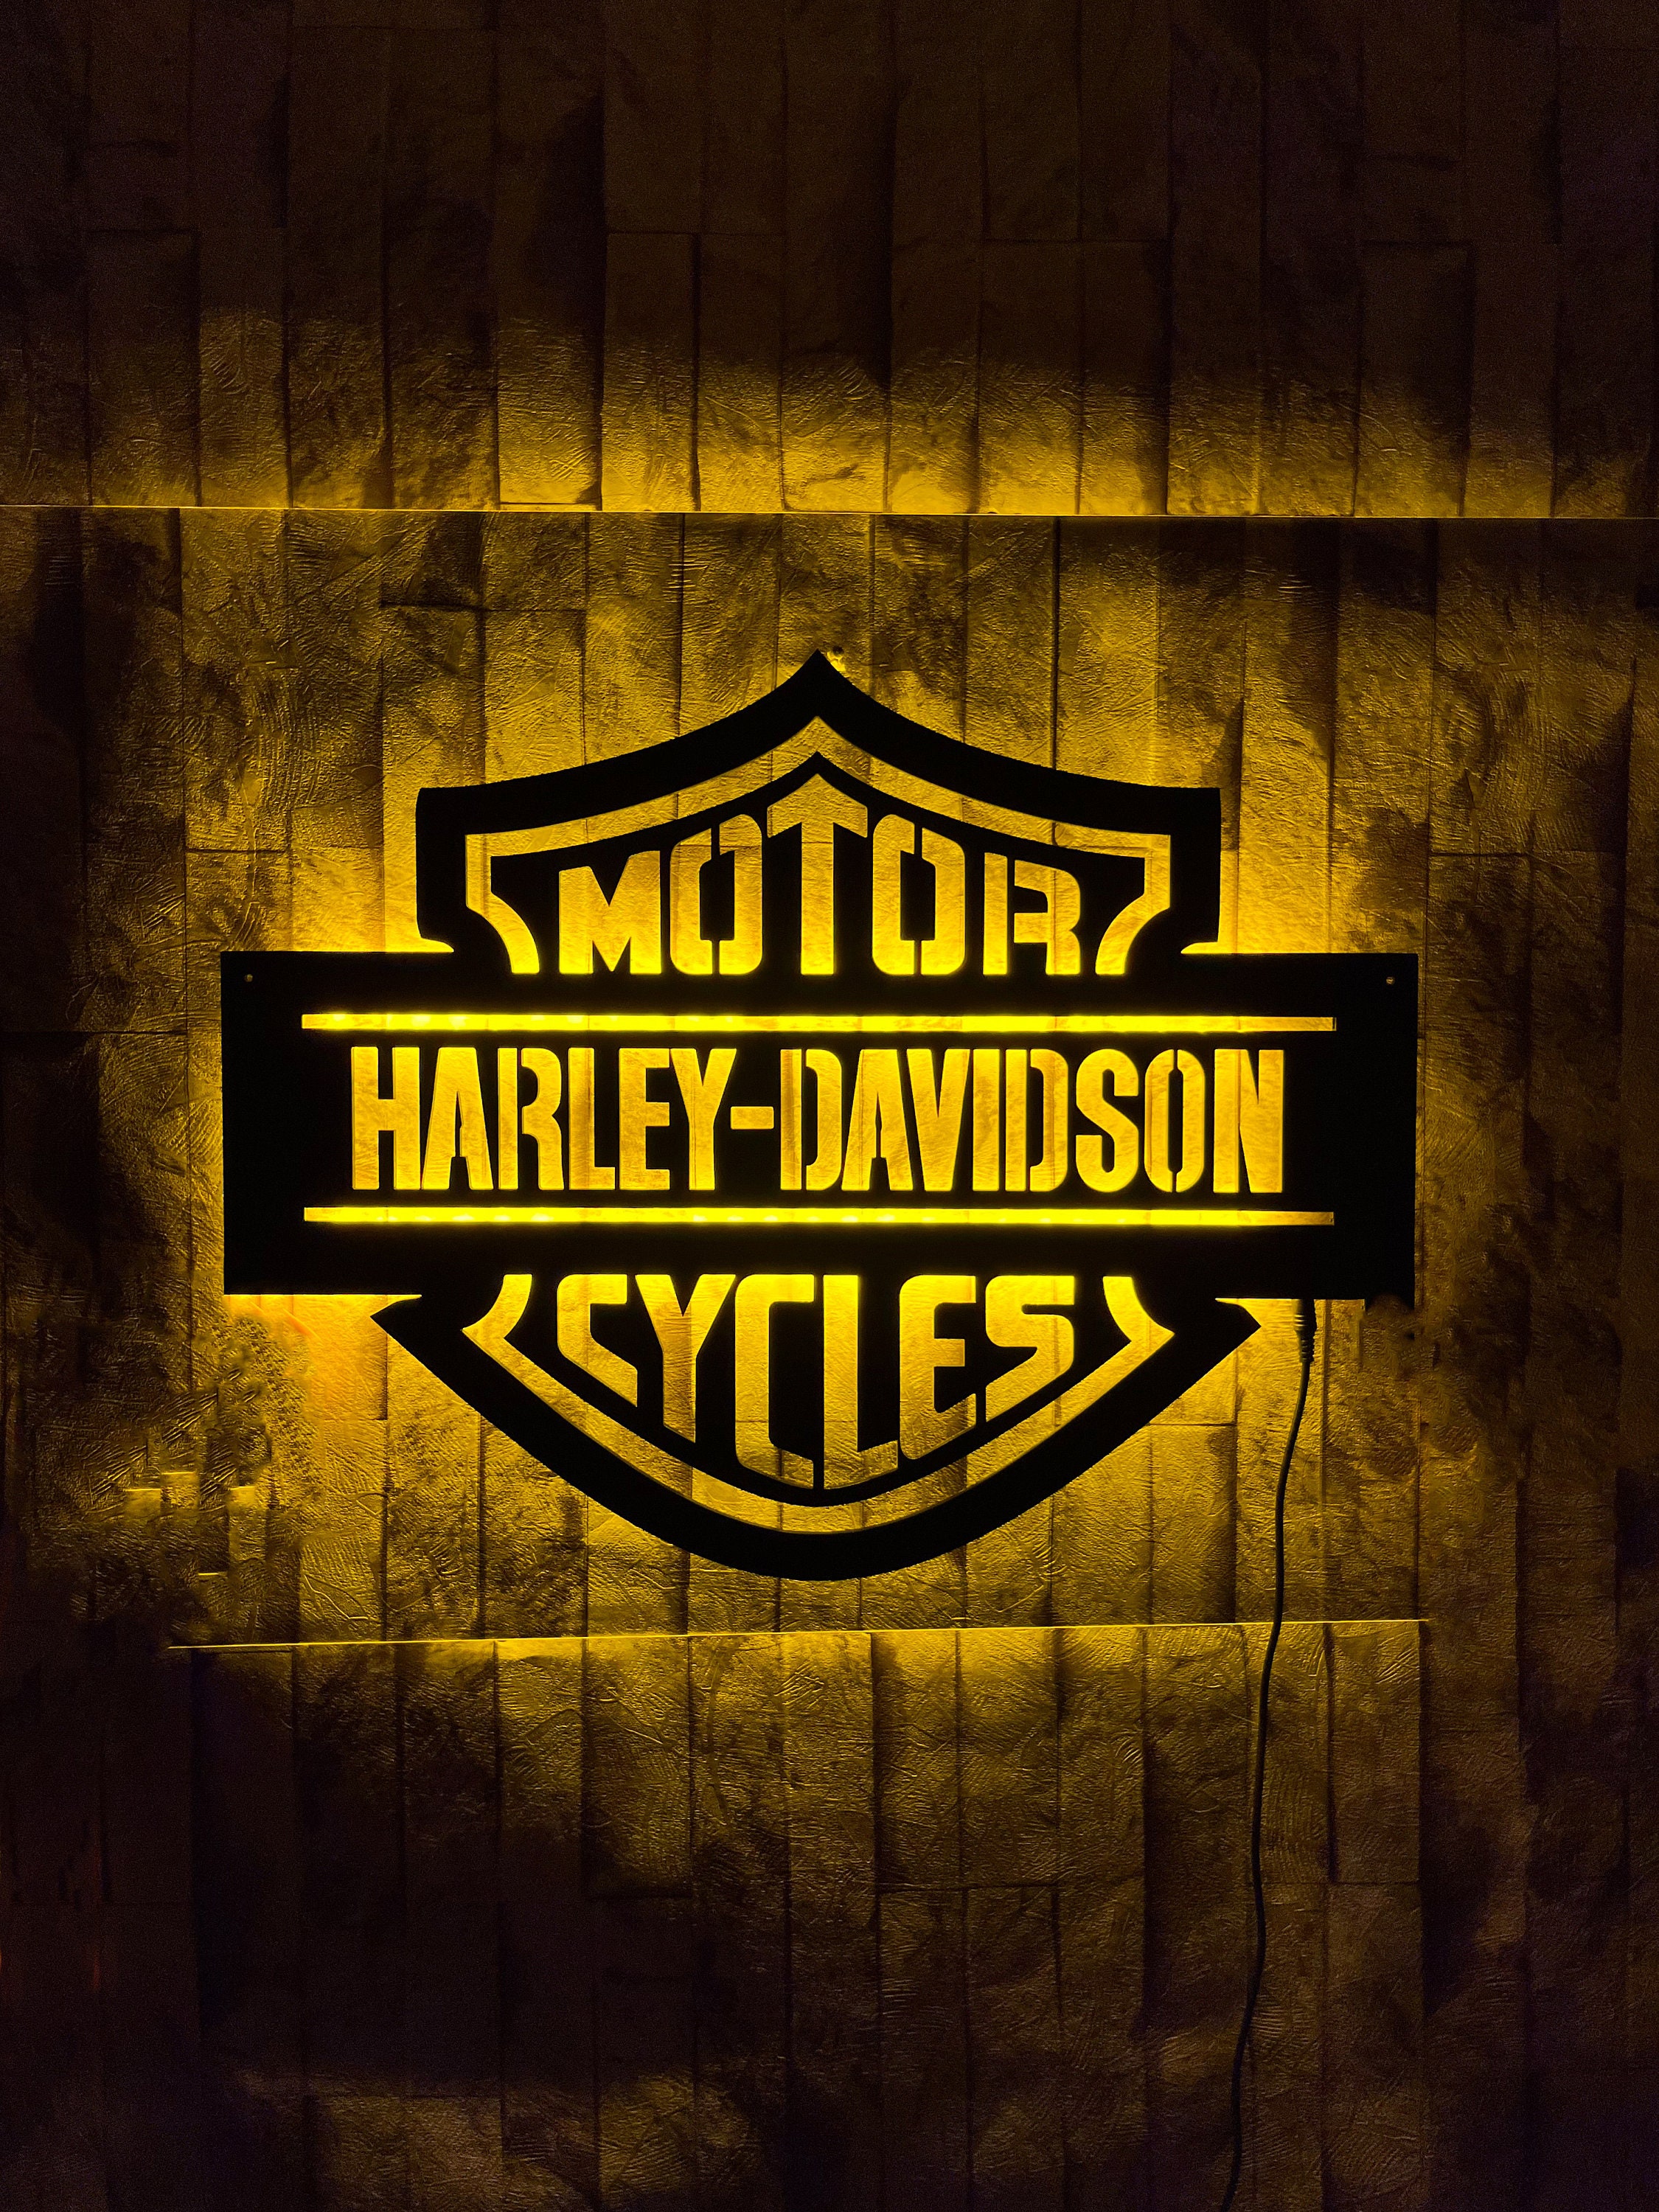 Harley Davidson Logo Harley Davidson Logo Led Sign Harley | Etsy